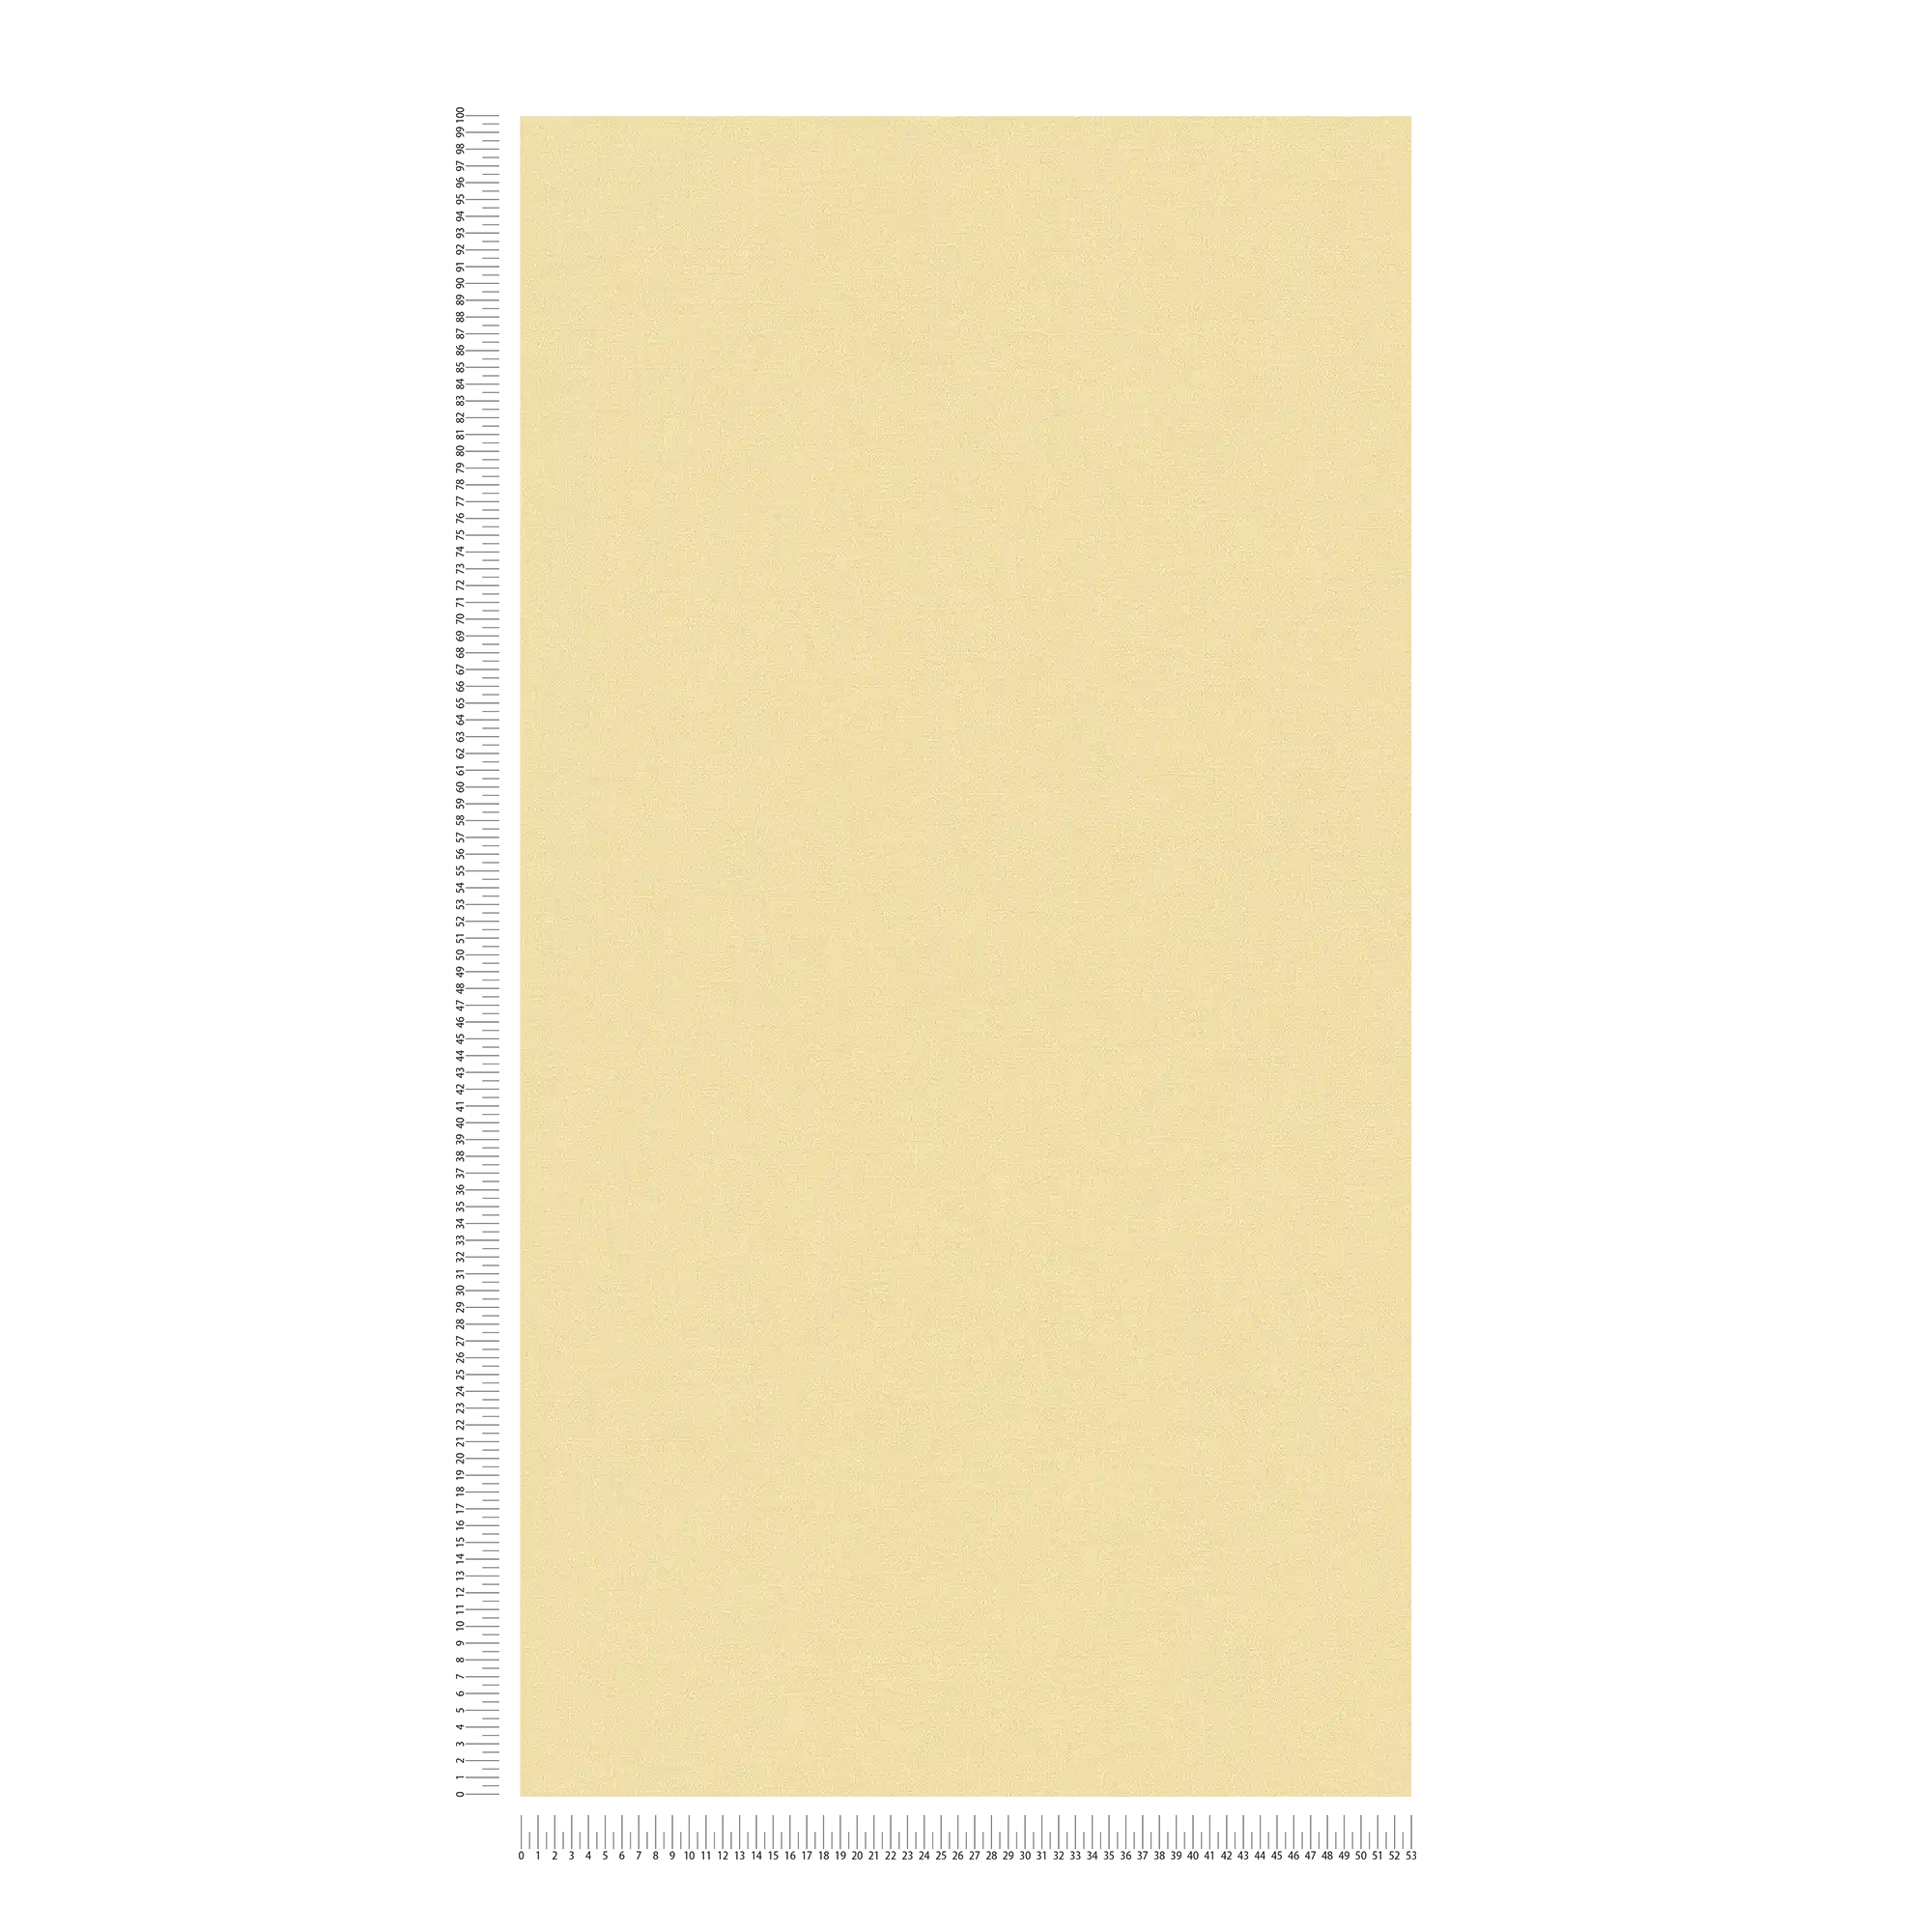             Carta da parati in tessuto non tessuto a tinta unita in una tonalità calda - giallo
        